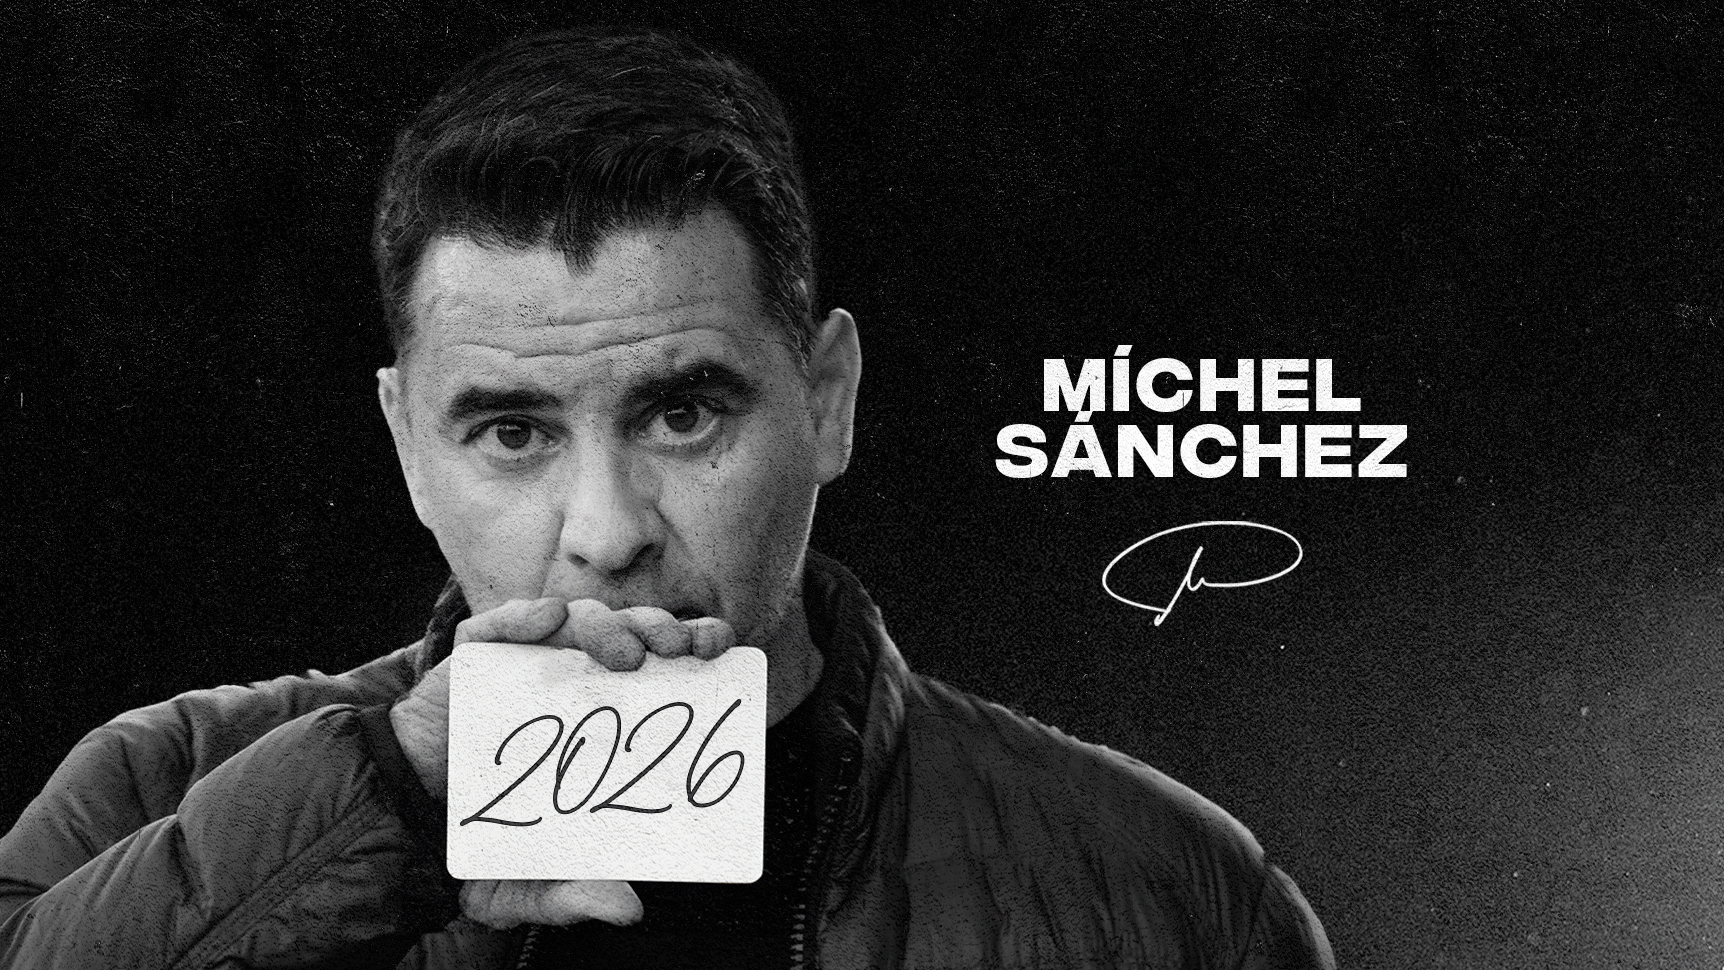 Michel renovado hasta el 2026